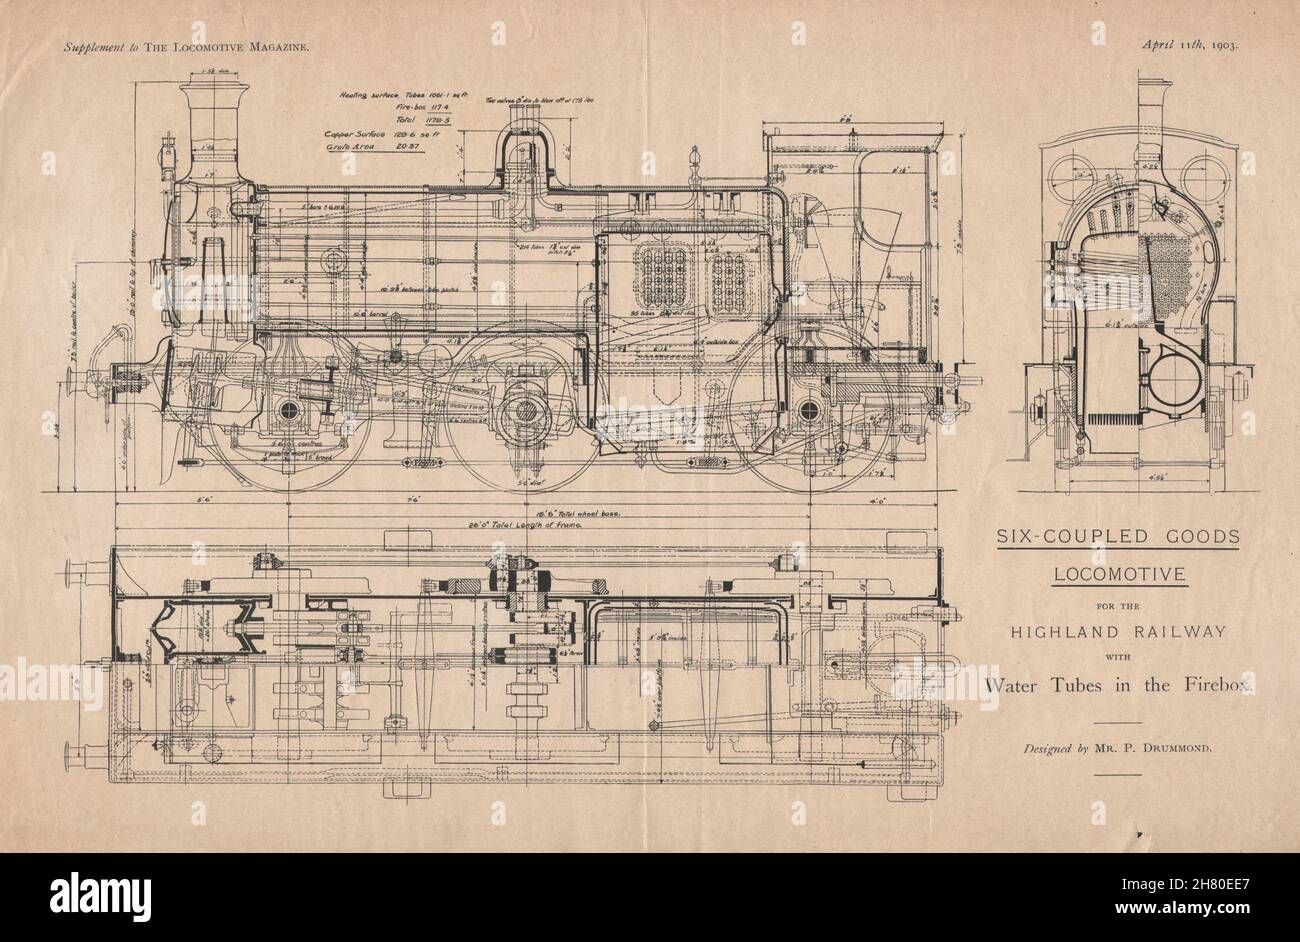 Locomotora de seis acoplados para el ferrocarril Highland. Plan de locomotoras 1903 Foto de stock